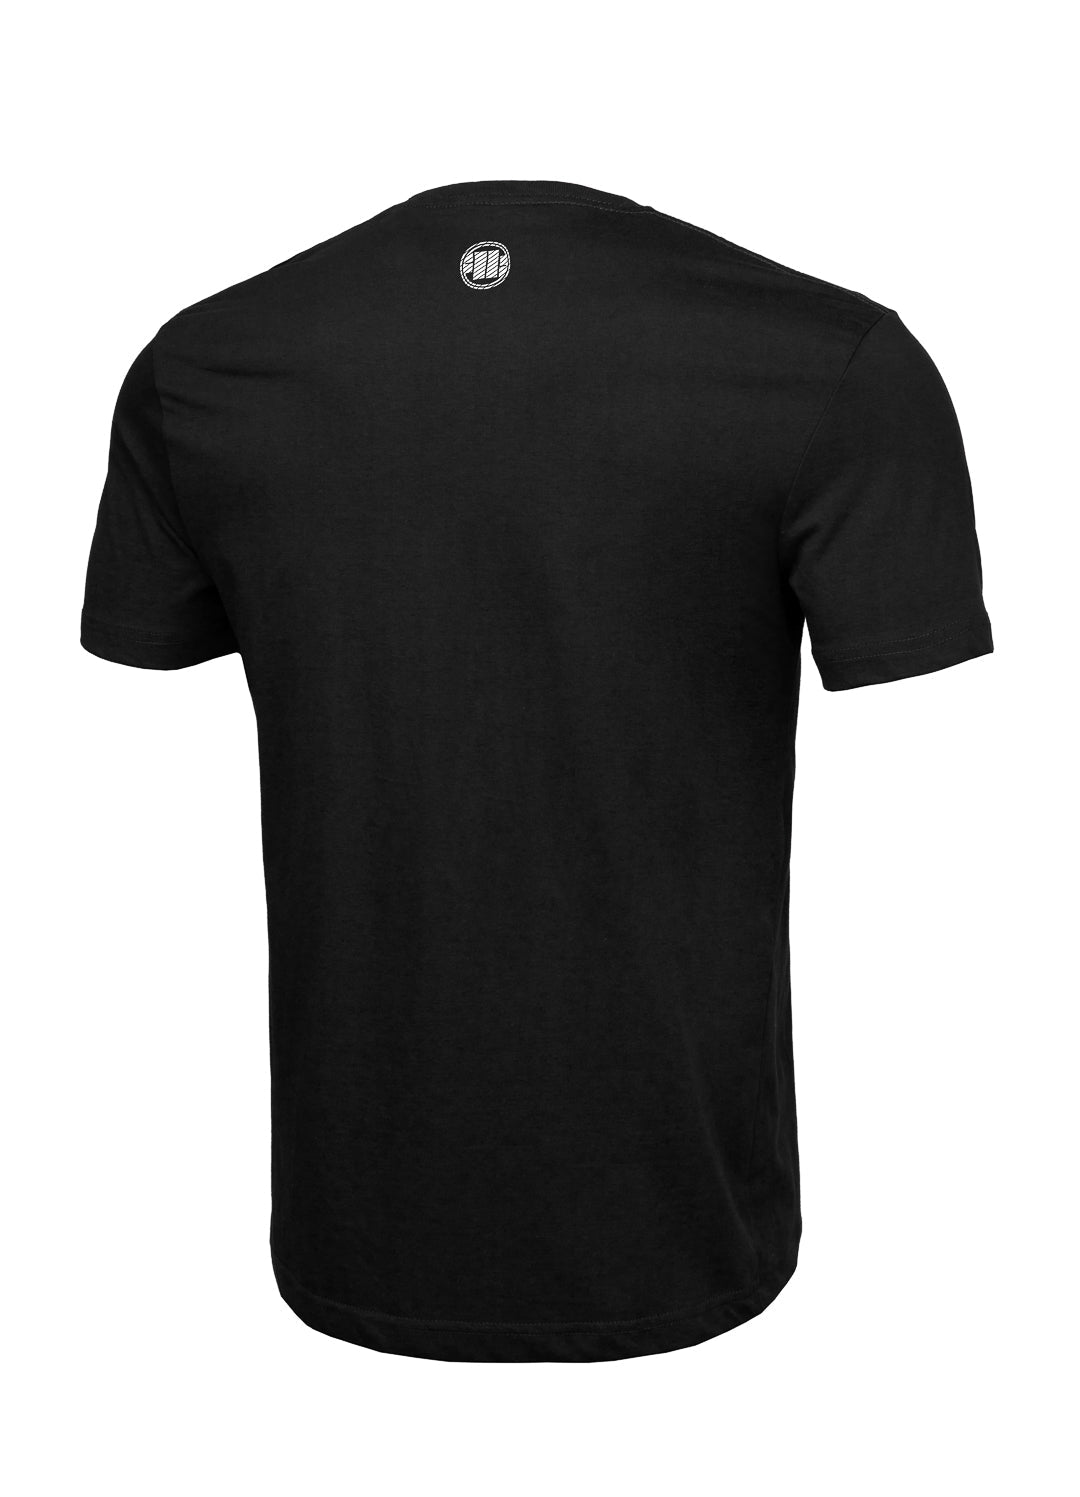 HILLTOP Lightweight Black T-shirt